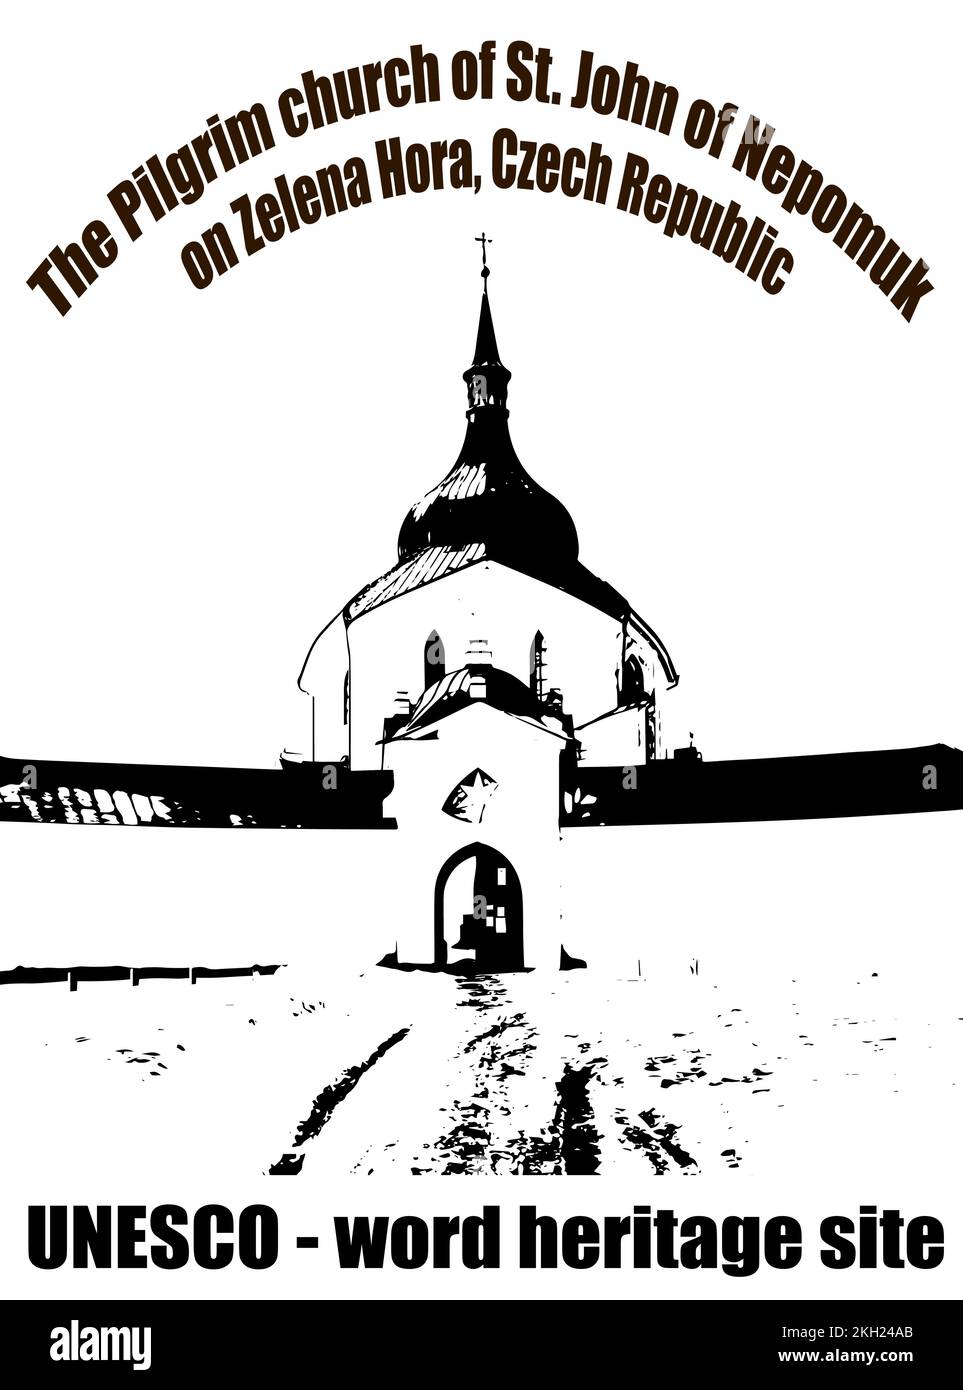 Wallfahrtskirche St. Johannes von Nepomuk (Jan Nepomucky) auf zelena hora, grüner Hügel, Zdar nad Sazavou, Tschechische Republik, UNESCO-Denkmal, Schwarz und weiß Stock Vektor